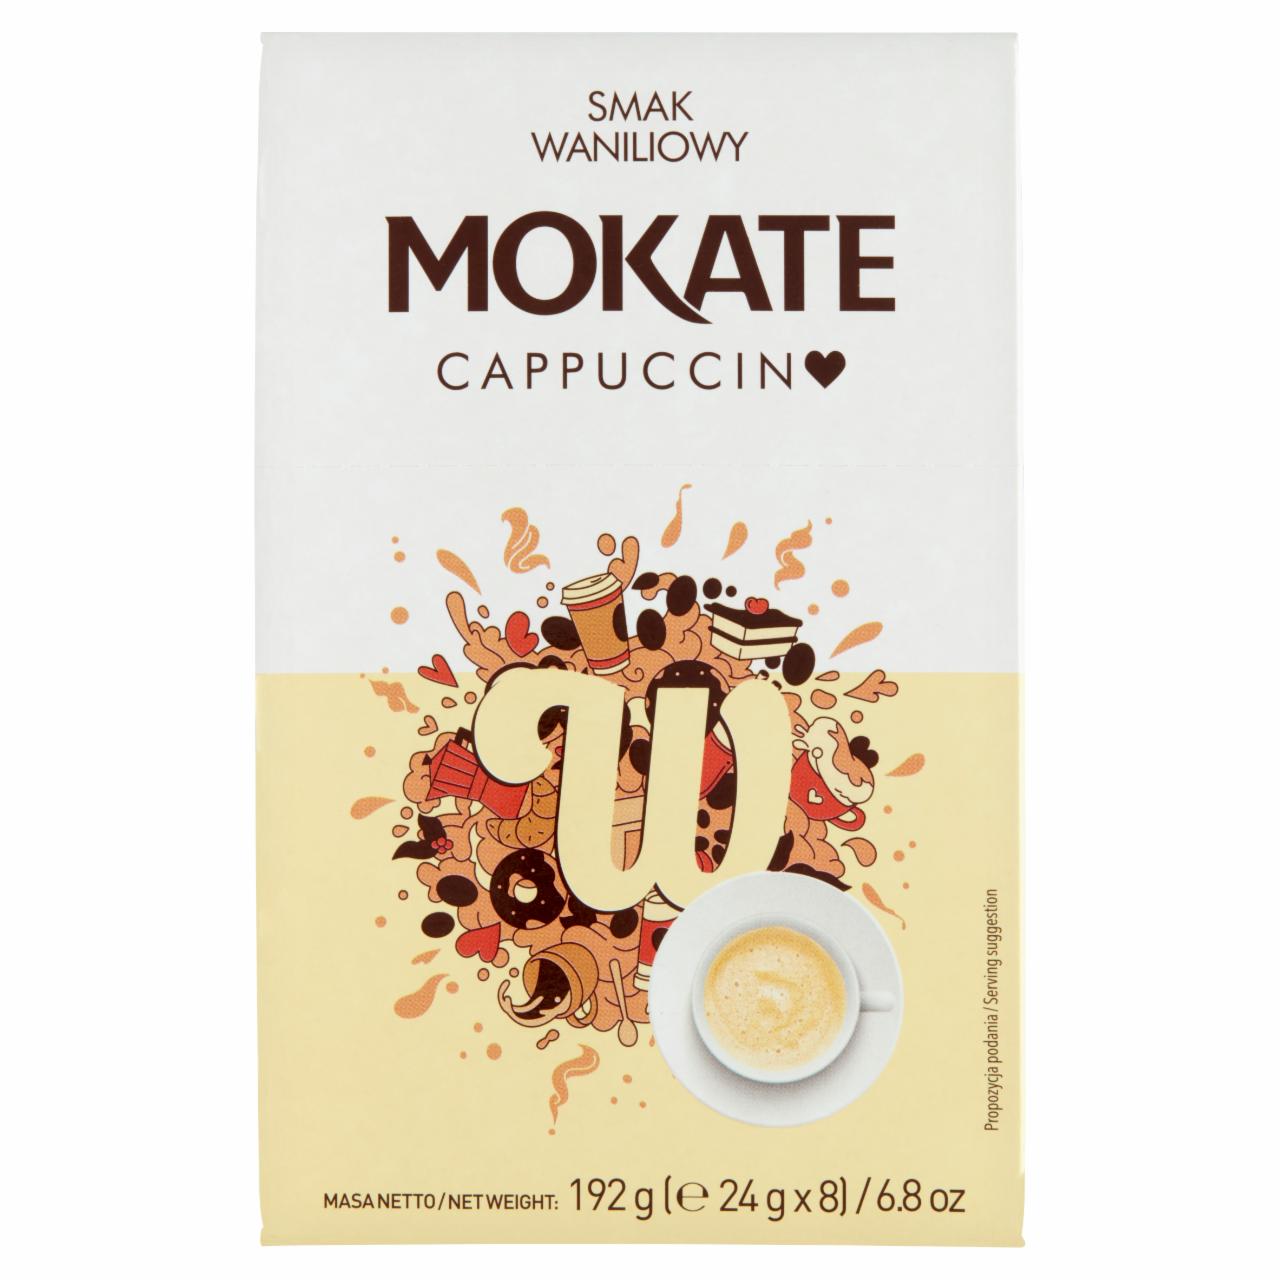 Zdjęcia - Mokate Cappuccino smak waniliowy 192 g (8 x 24 g)